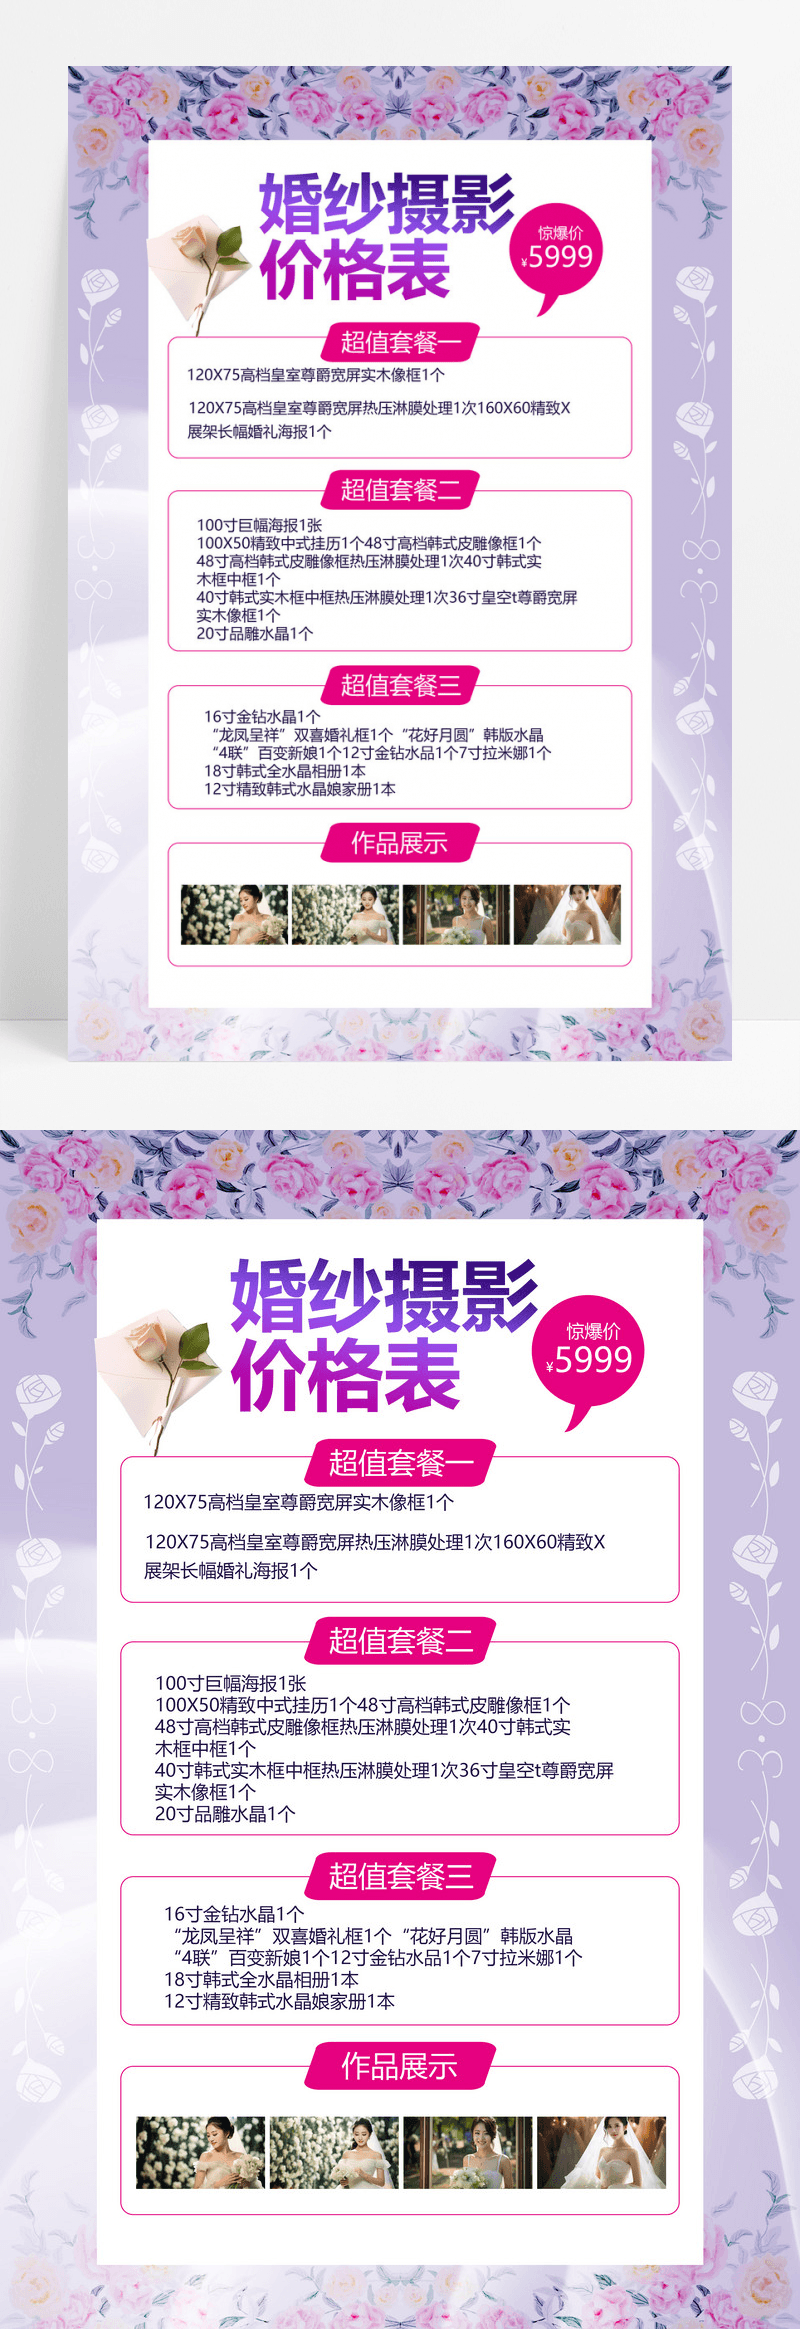 紫色创意简洁婚纱摄影价格表宣传海报设计婚纱价格表